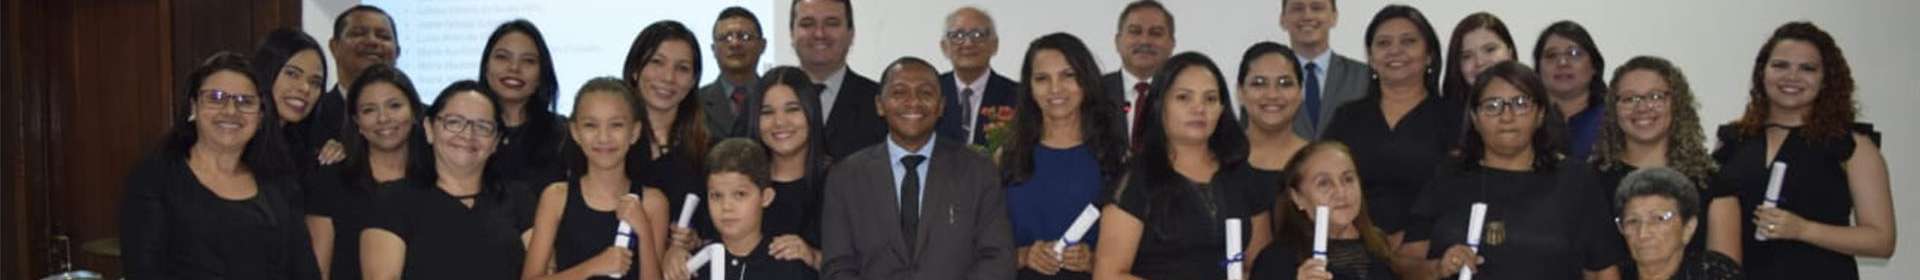 Décima primeira turma de Libras conclui oficina em Teresina, Piauí